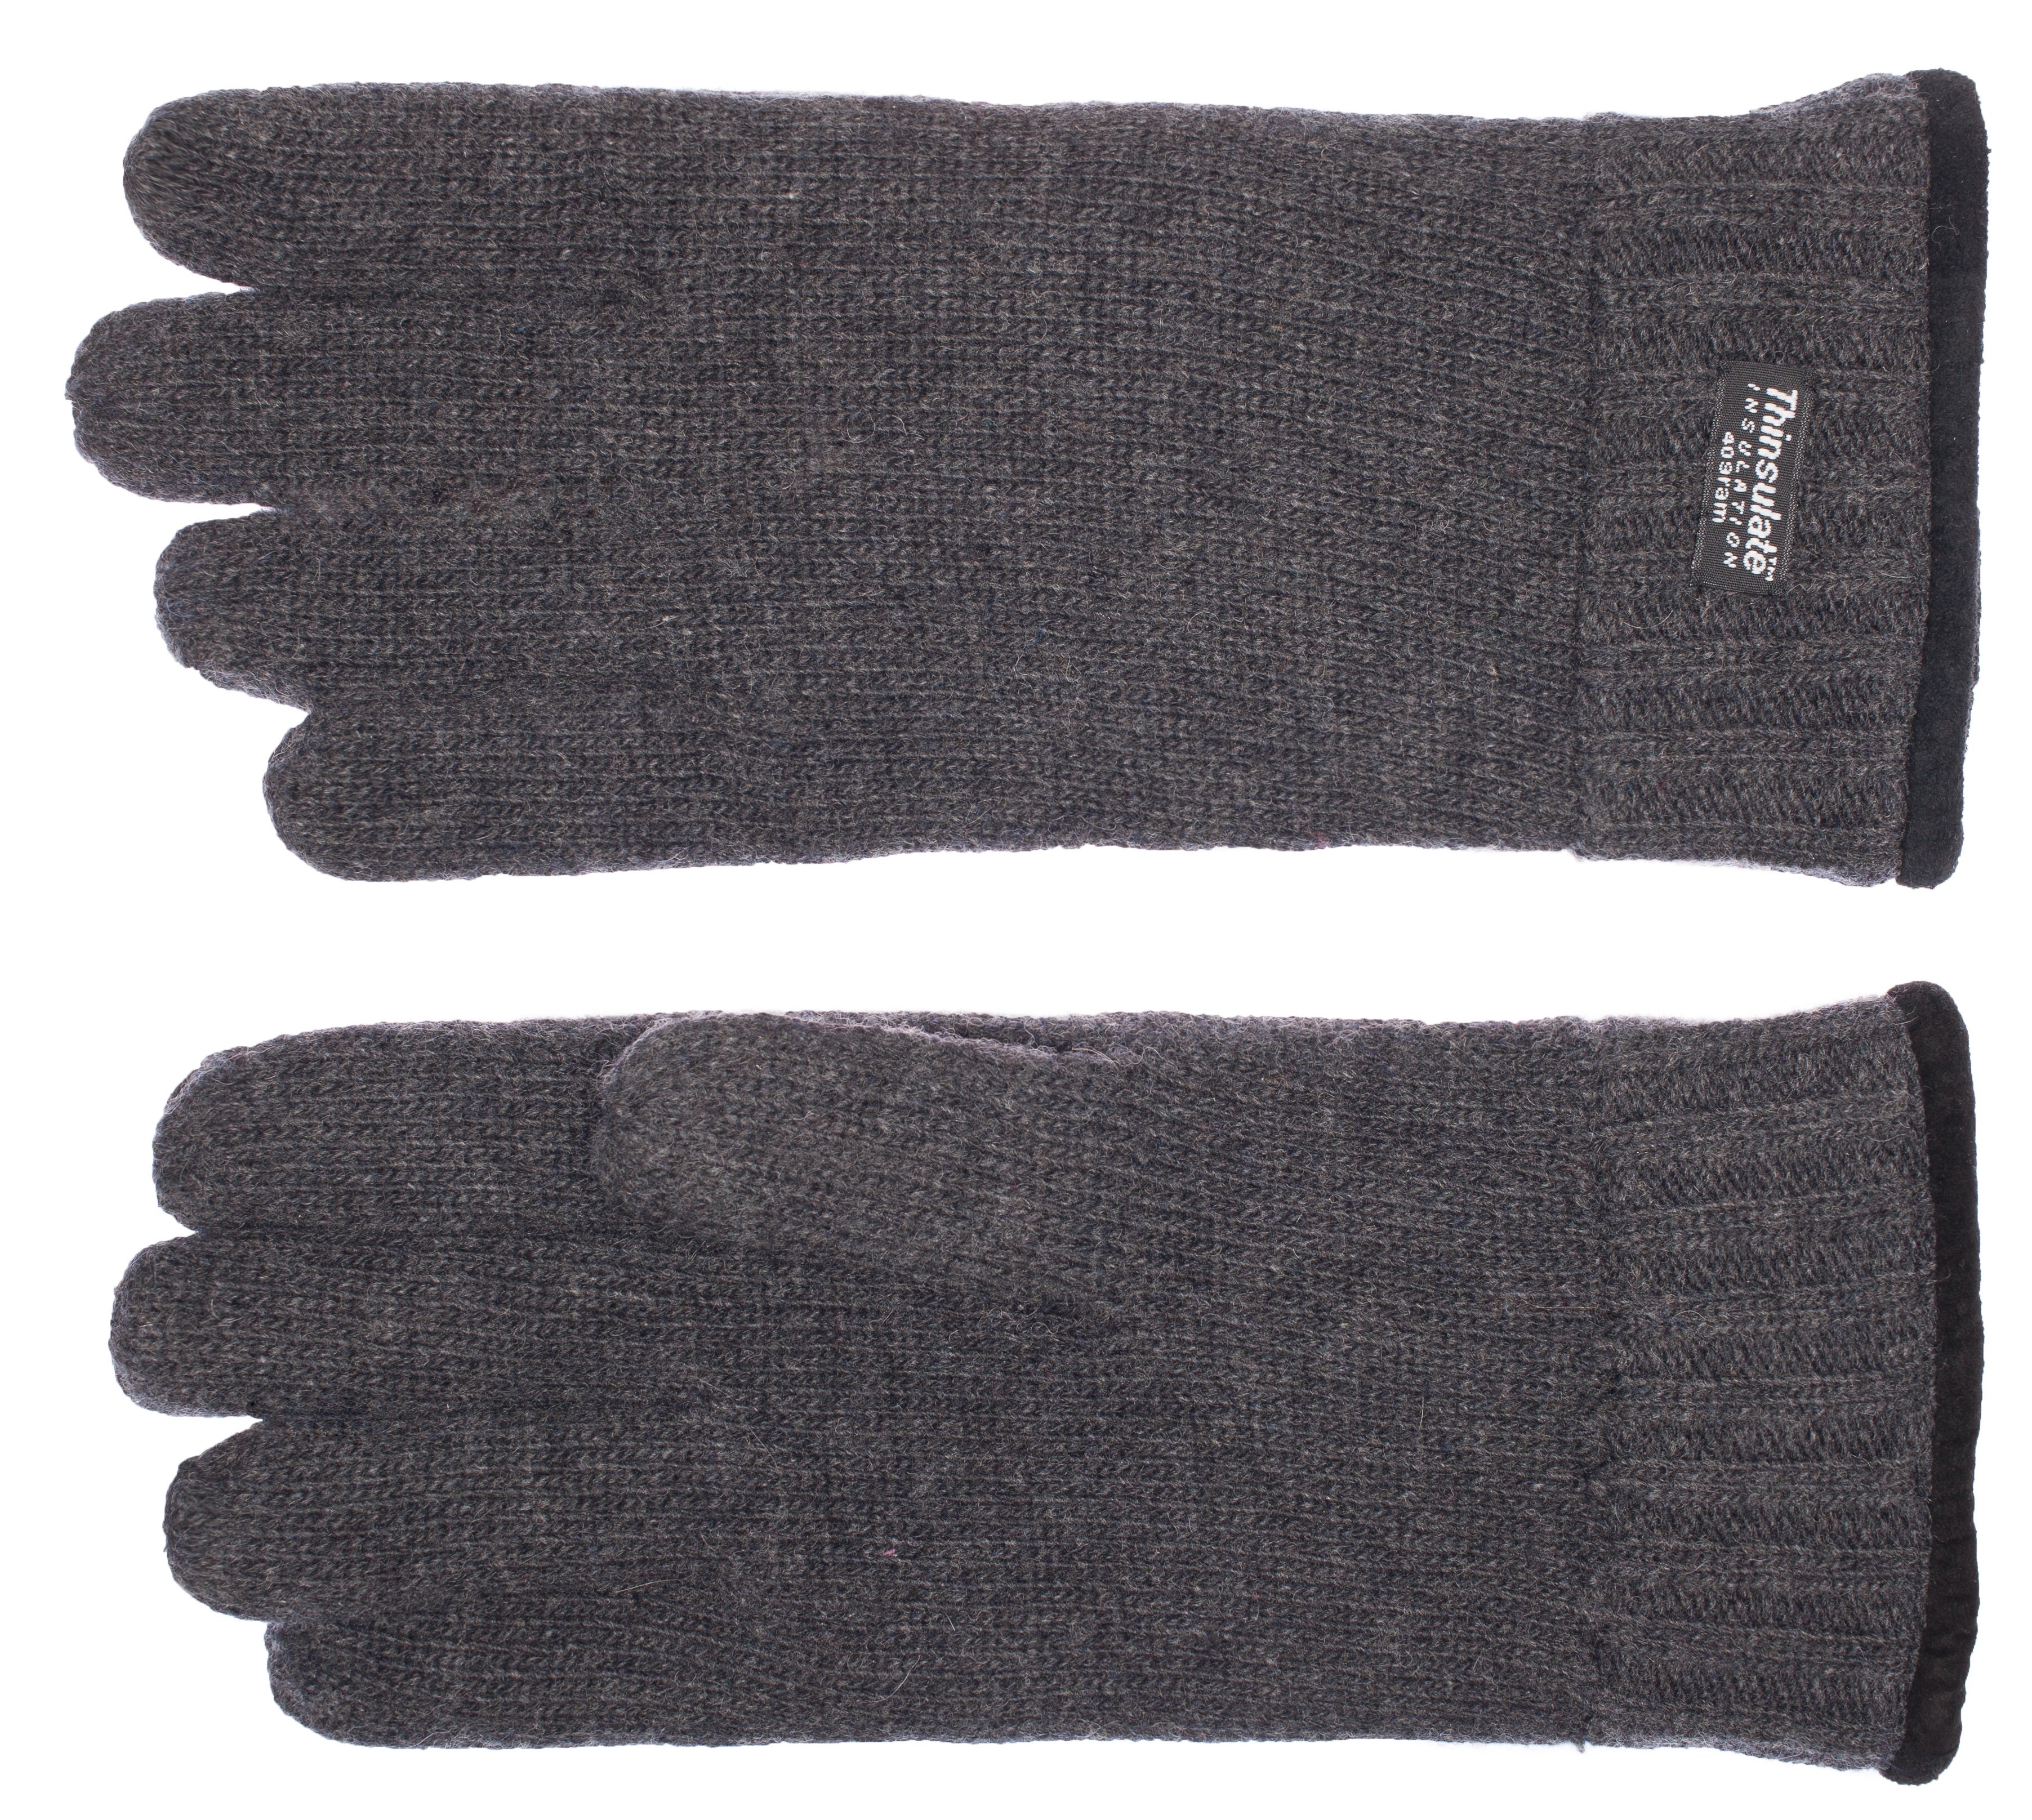 EEM Herren Strickhandschuhe, weiche Wolle oder Baumwolle je nach Farbe, Thinsulate Thermofutter, Saum mit Paspelierung